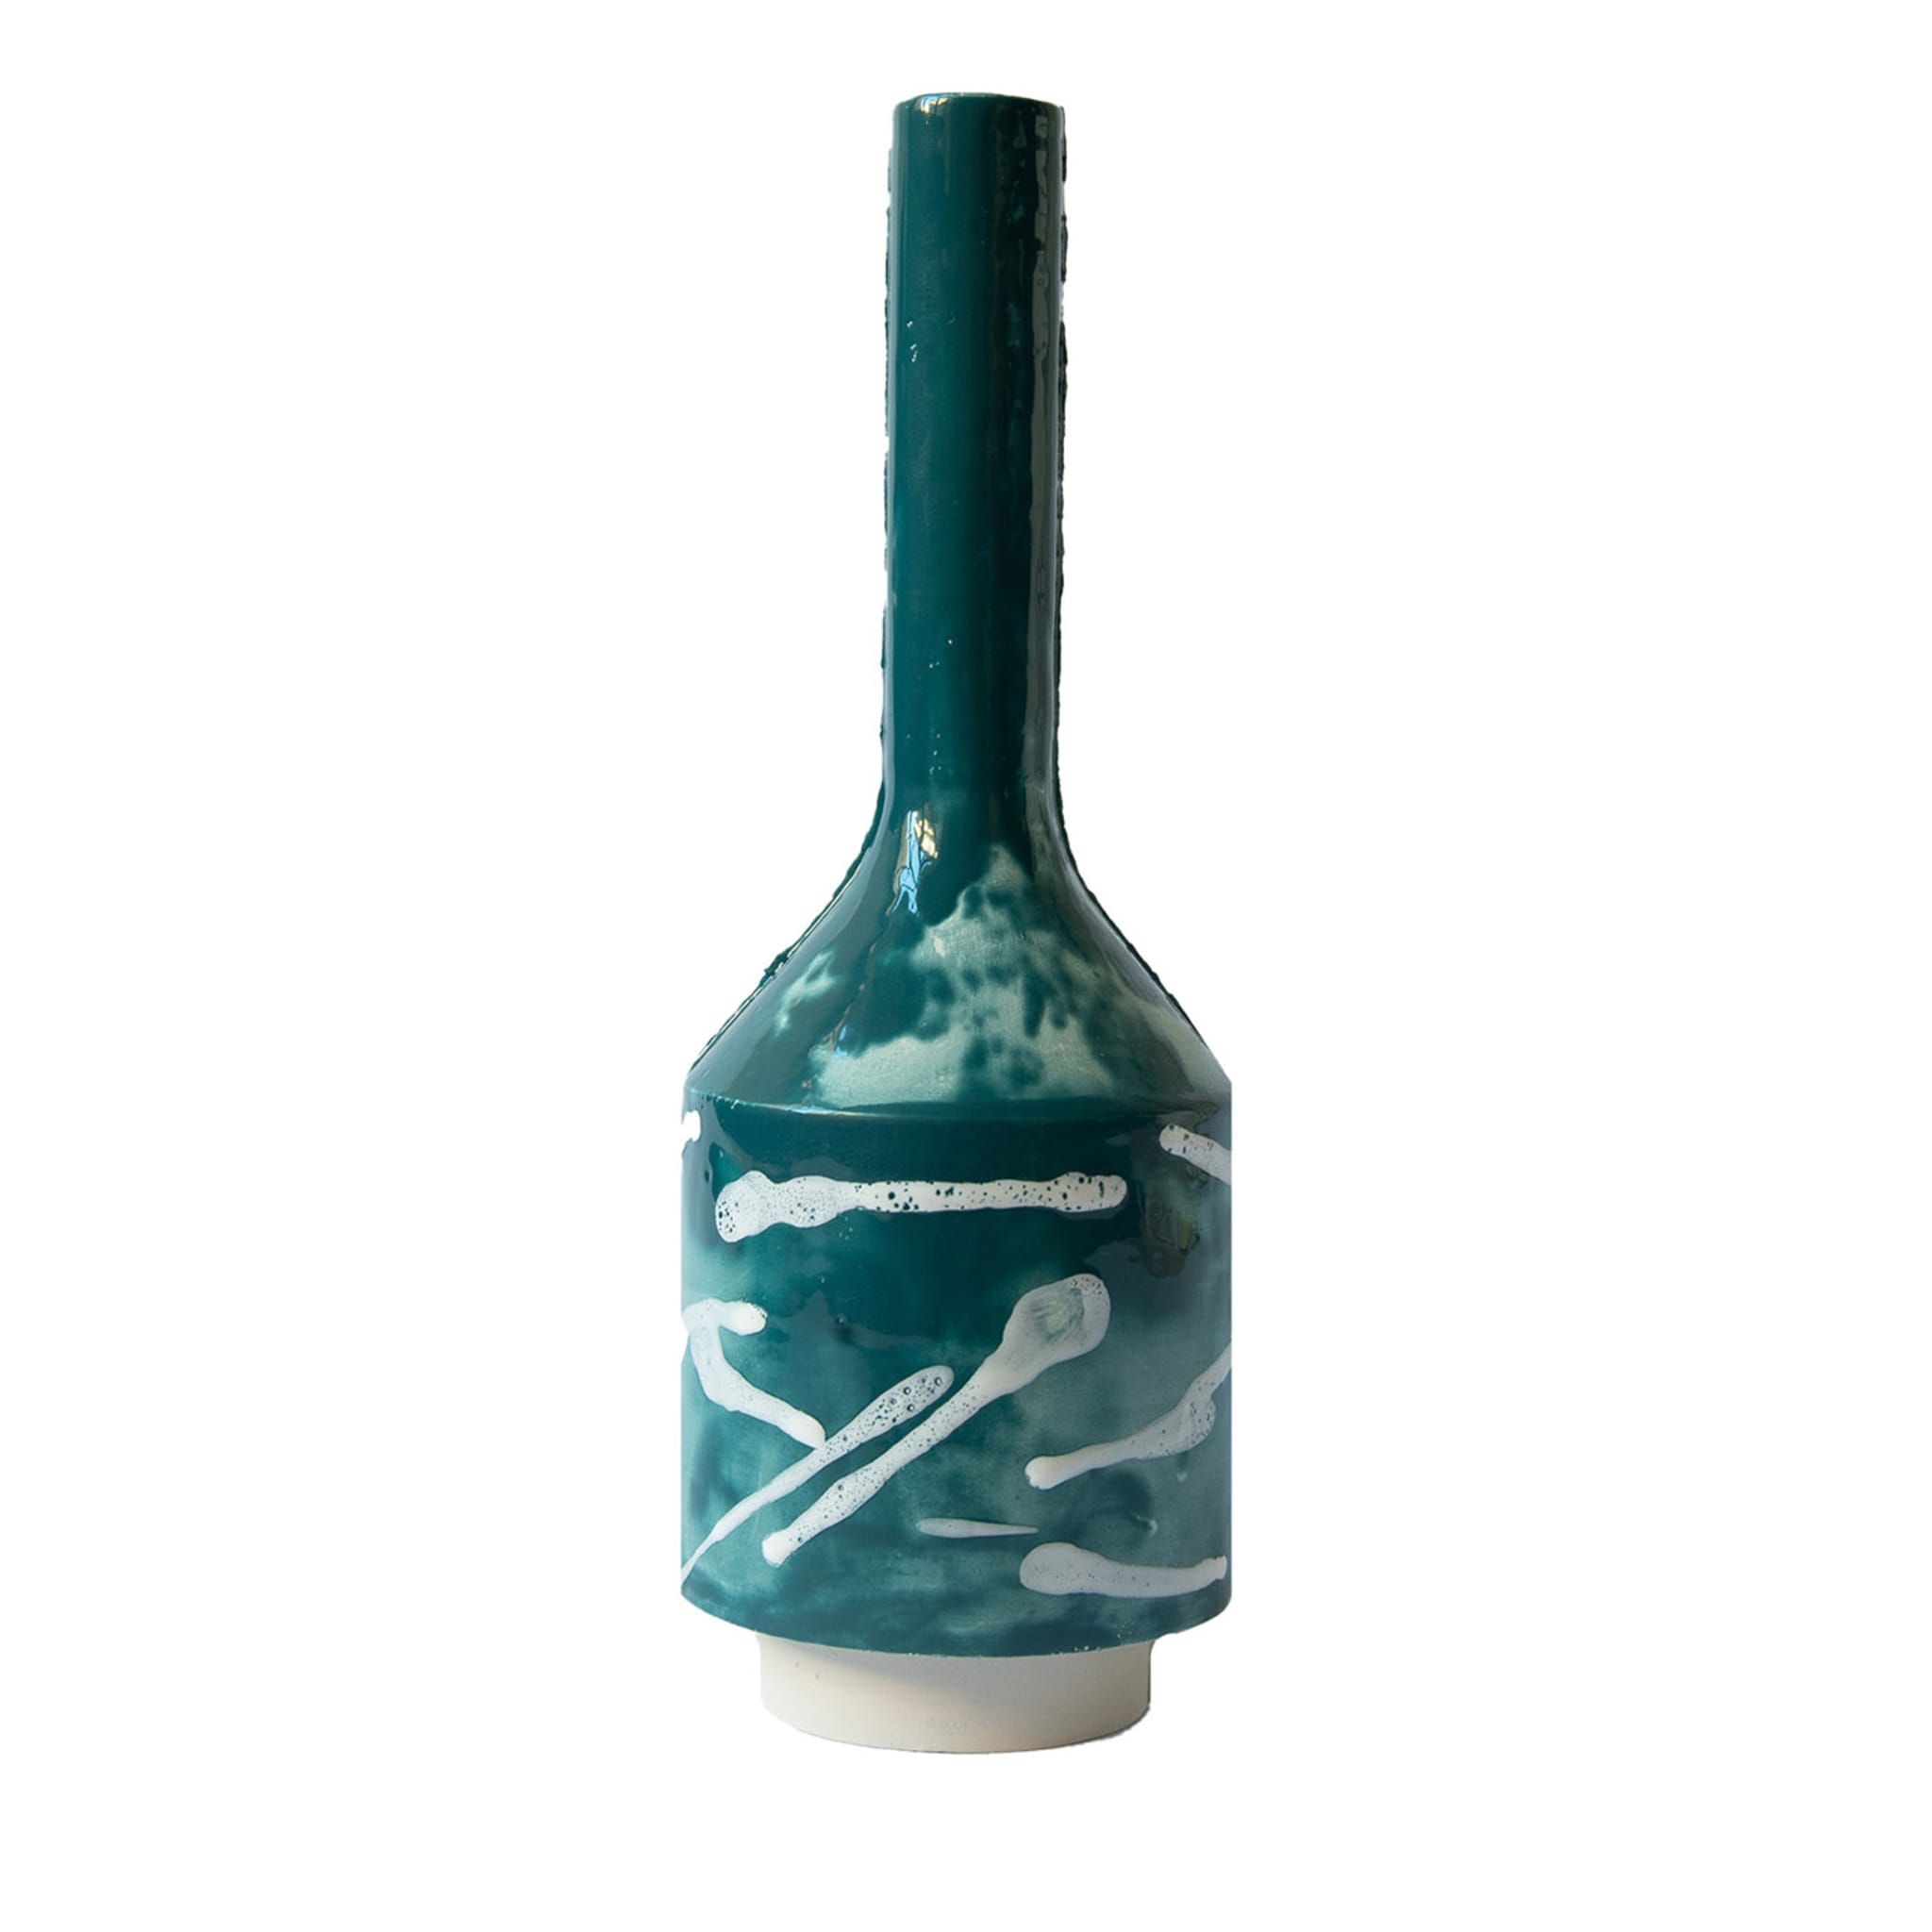 Marmo Serpentino Teal Einstielige Vase - Hauptansicht